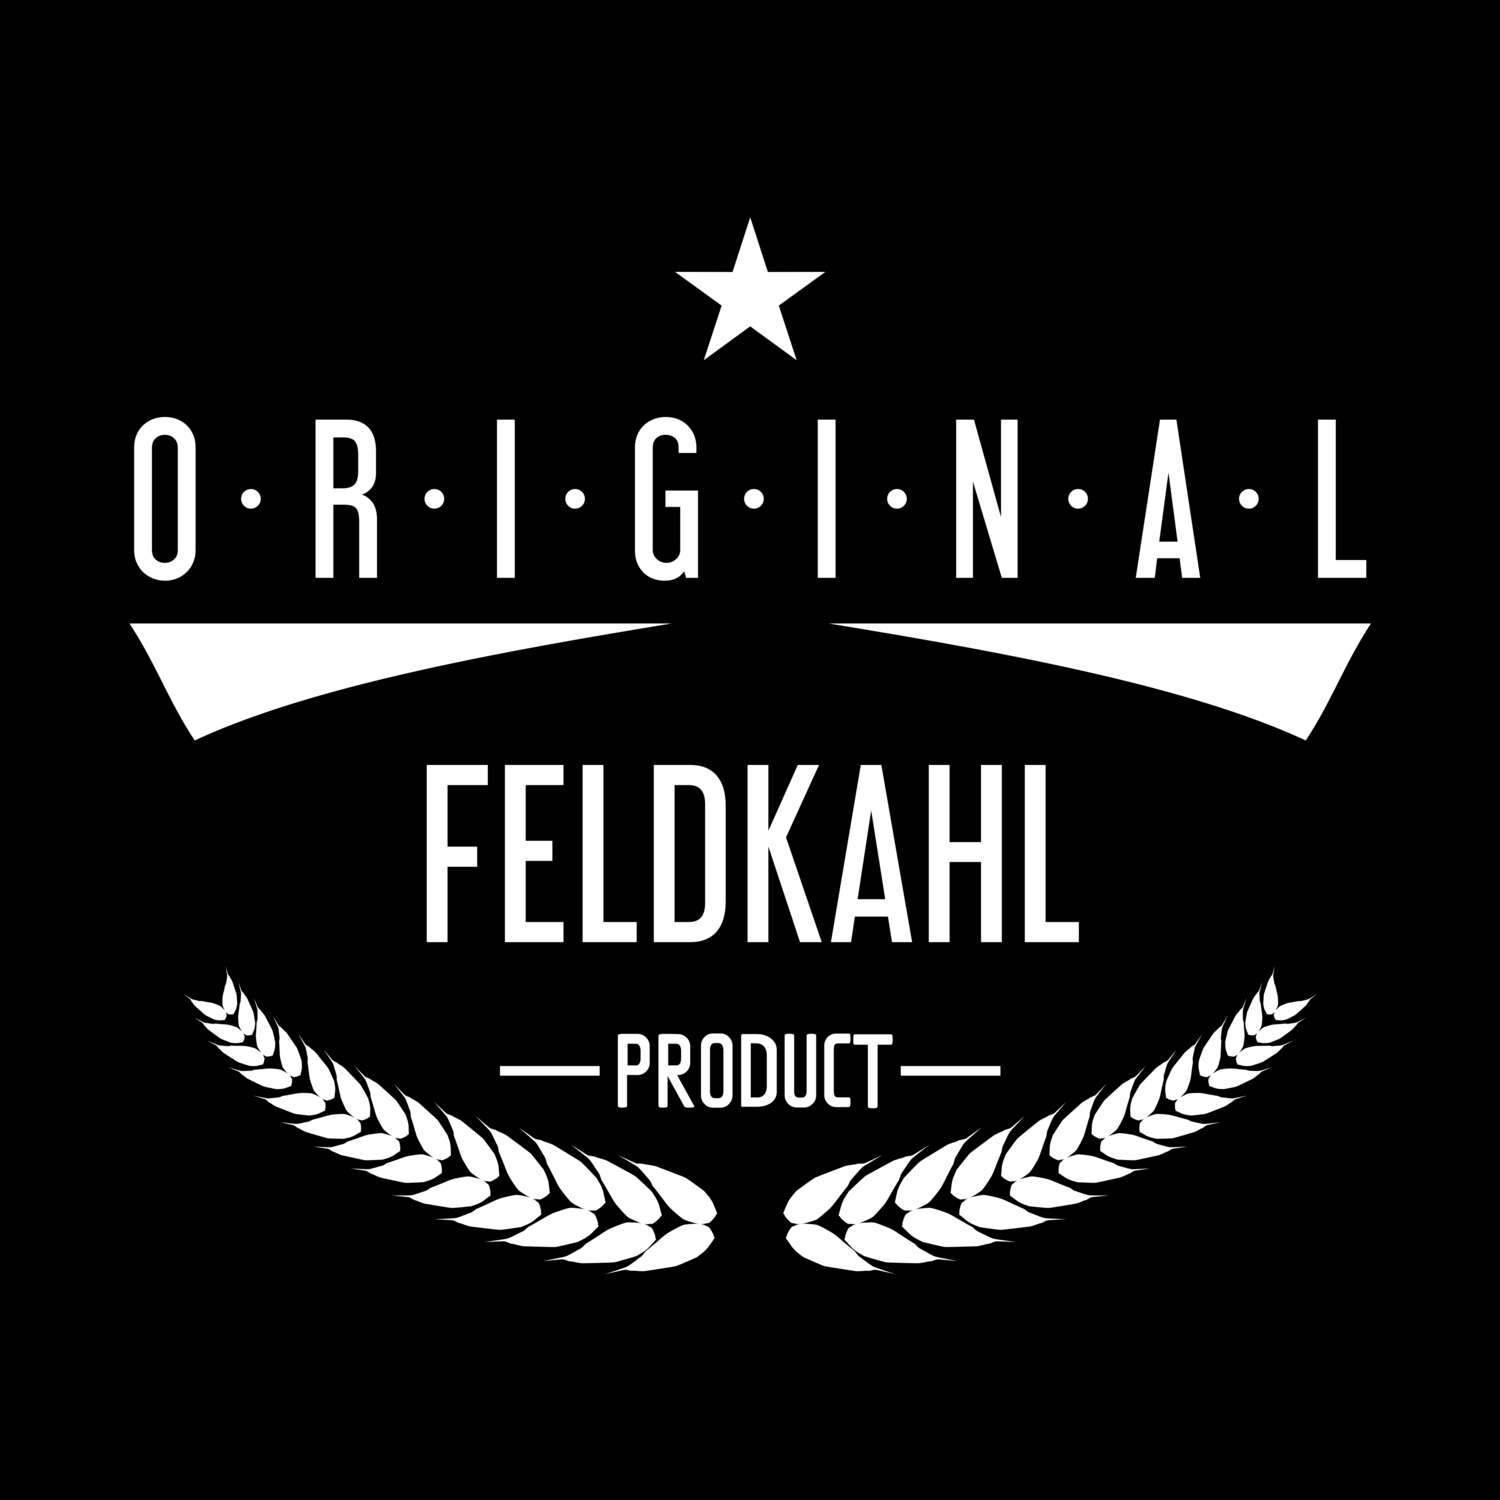 Feldkahl T-Shirt »Original Product«